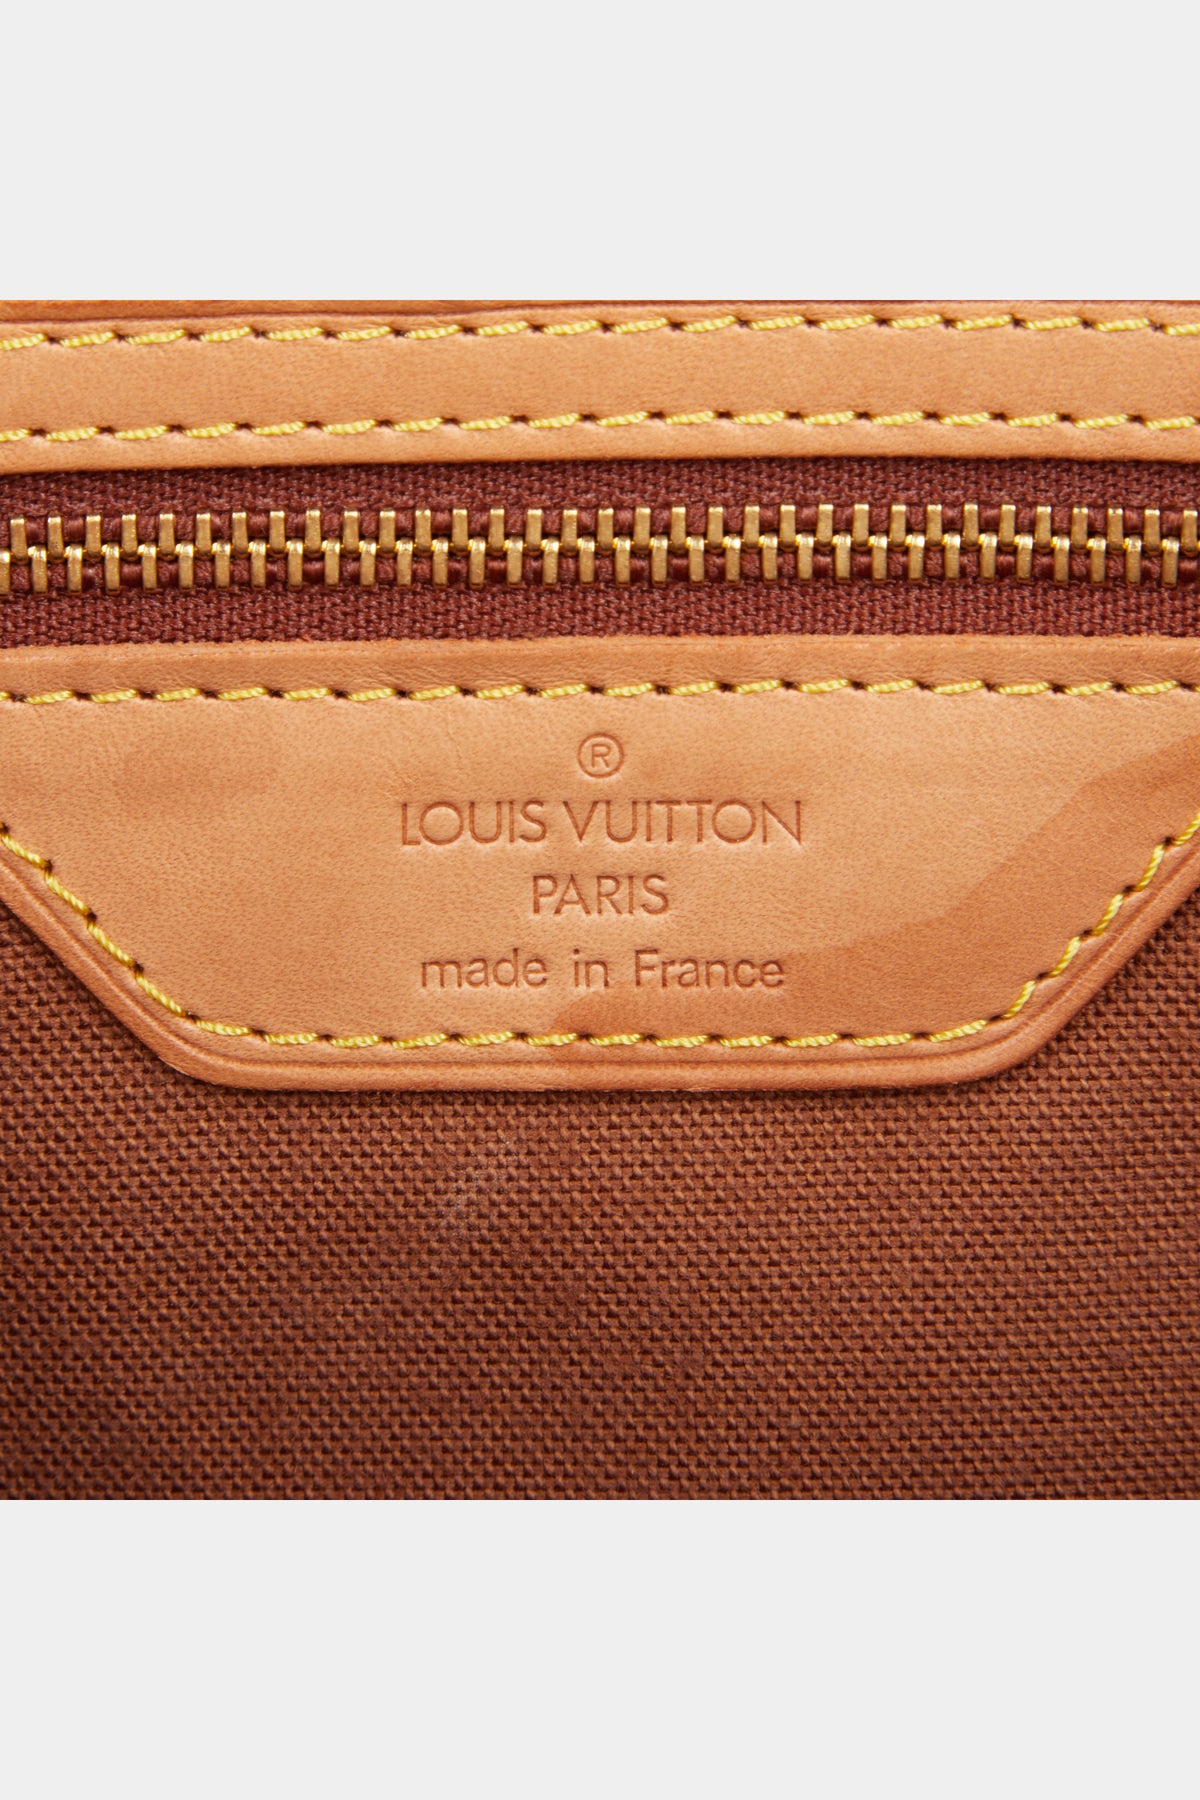 Louis Vuitton Damier Ebene Centenaire Chelsea 345466